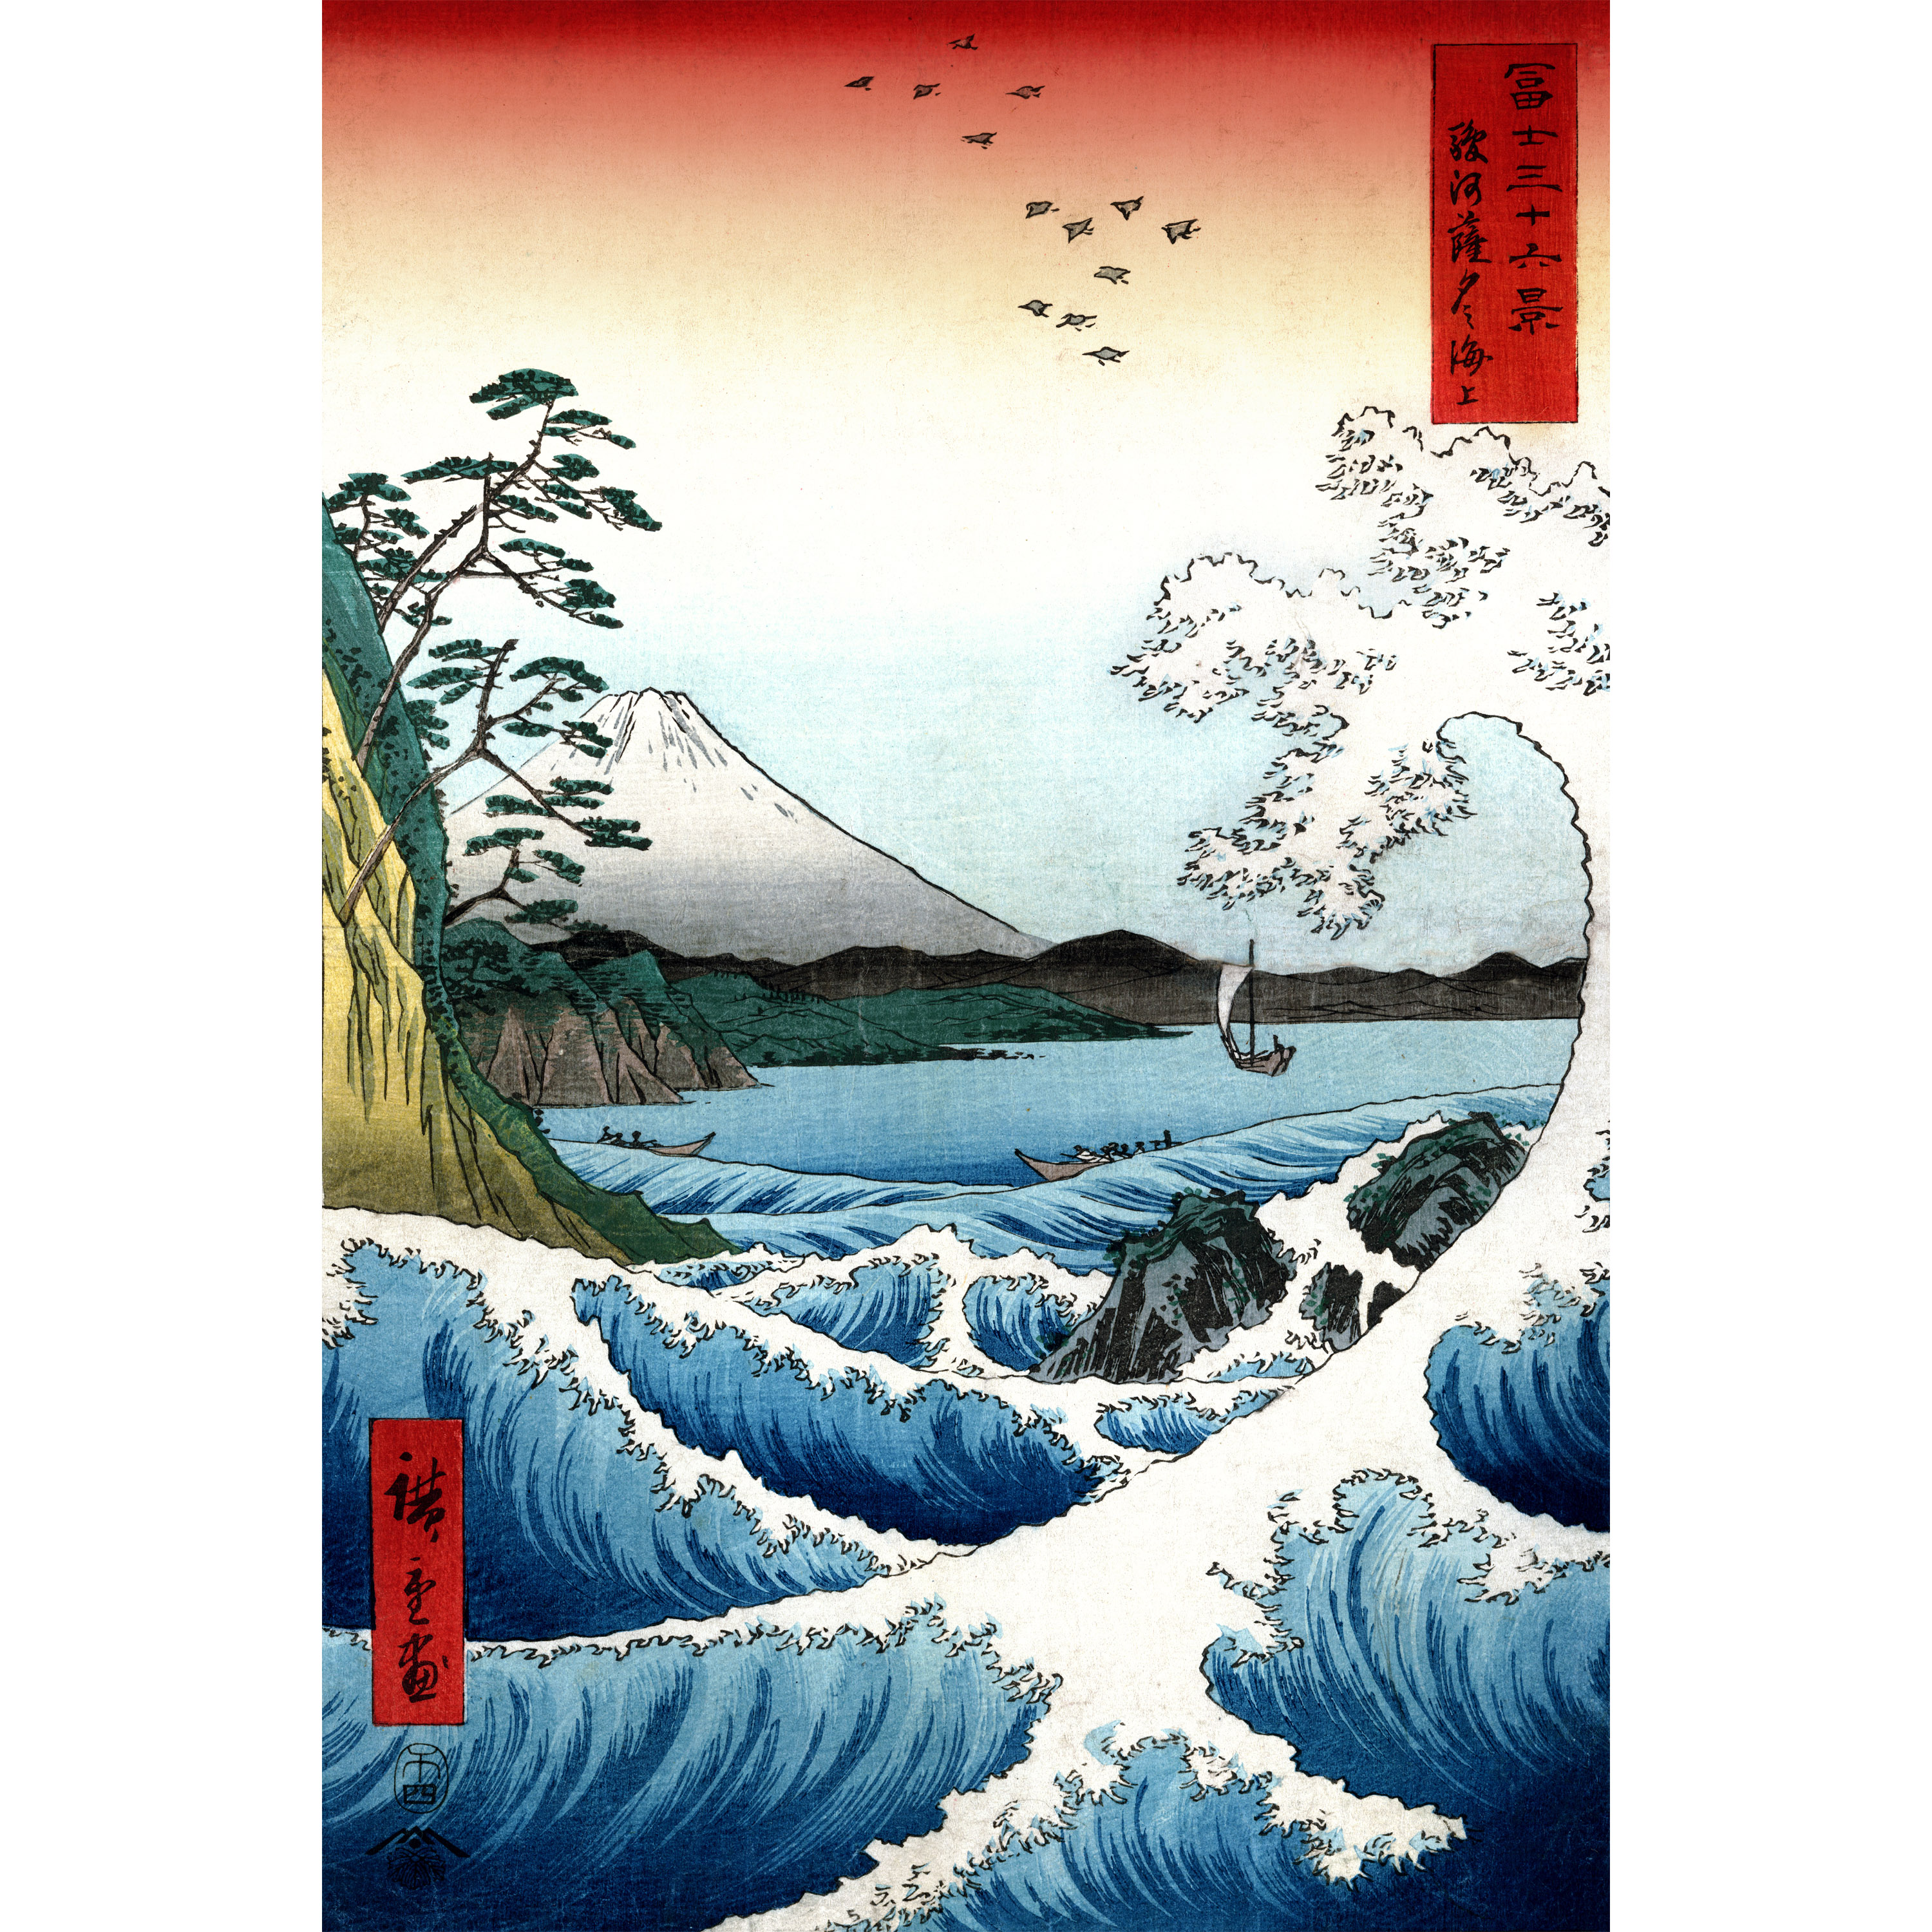 Buy Crashing Waves Ukiyo-e by Hiroshige Wall Art Online (CAN-ART-HIRO1